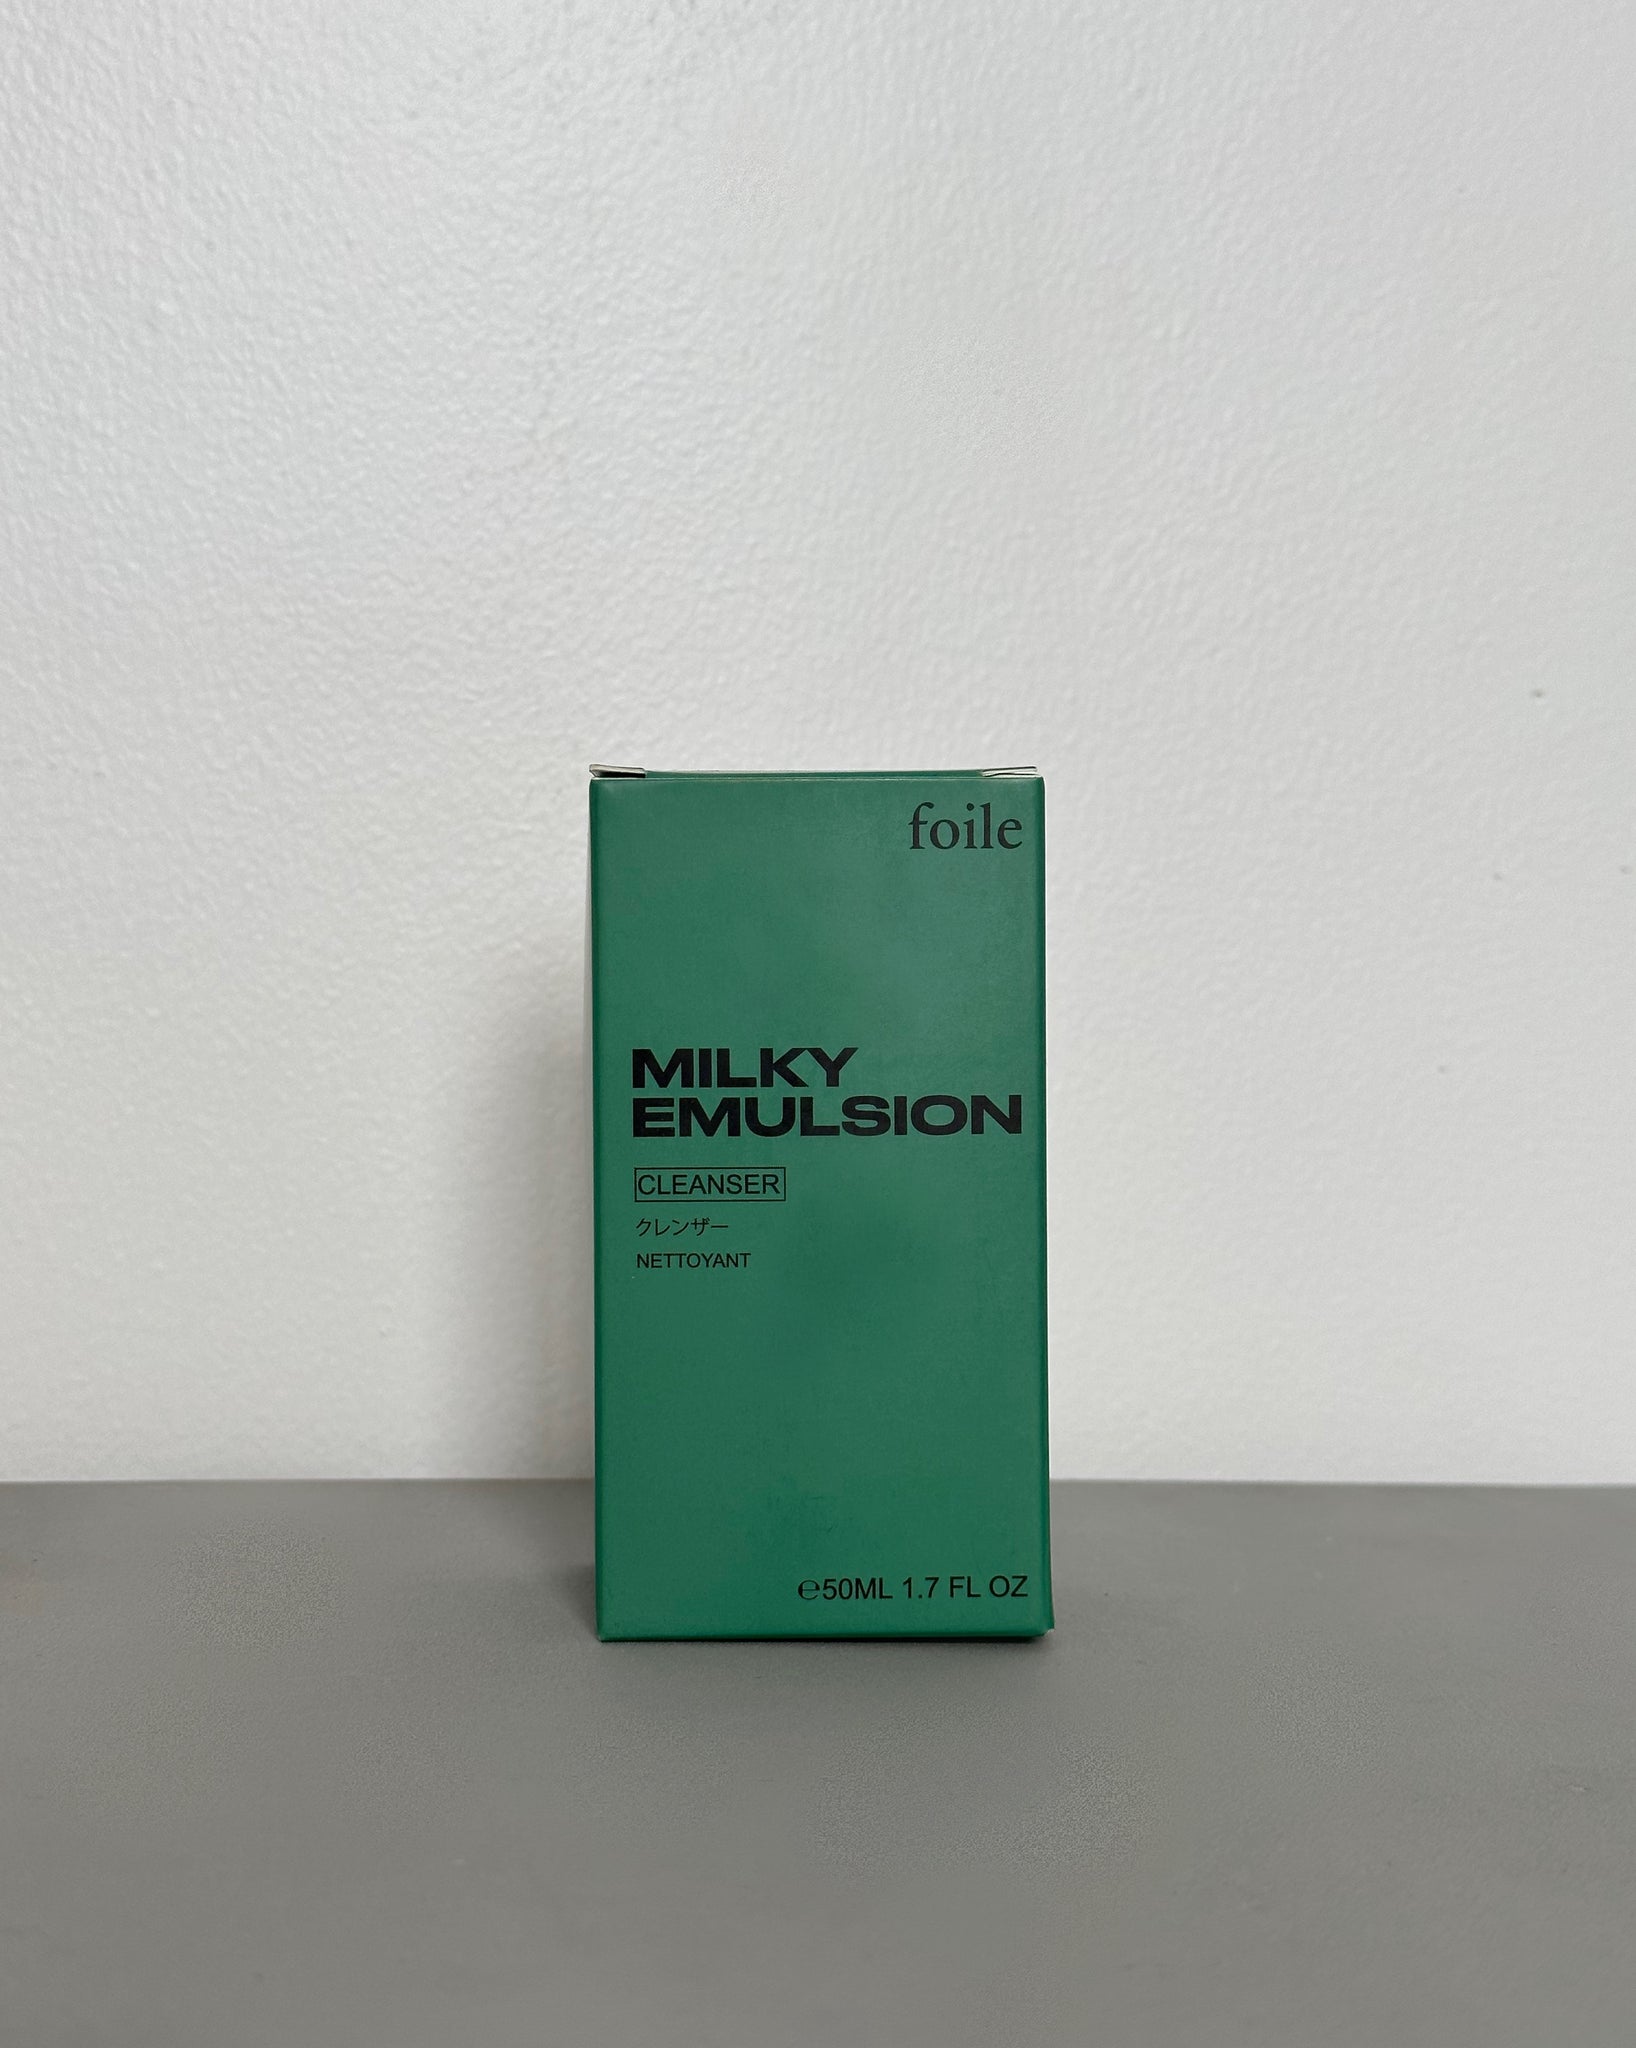 Milky Emulsion Cleanser - That Looks